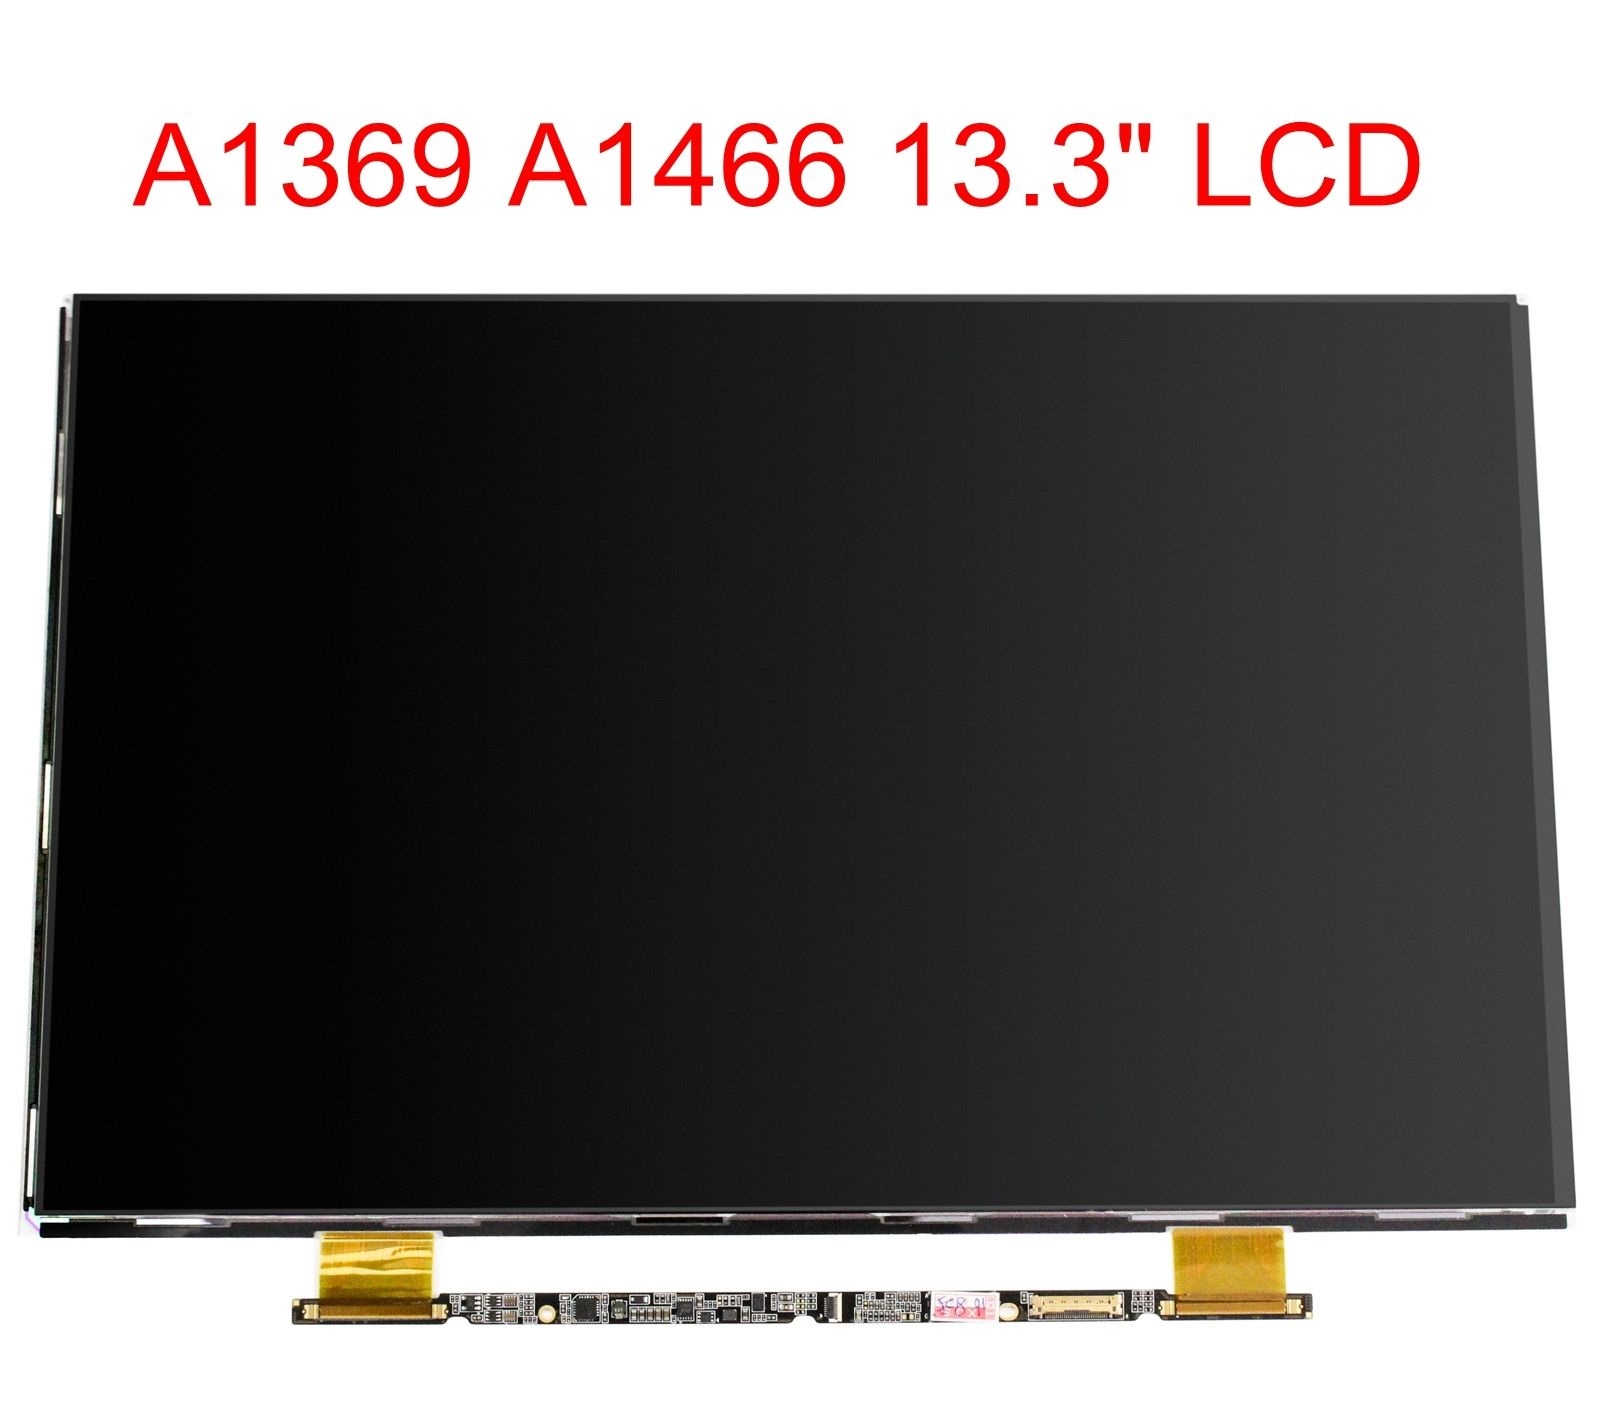 Thay màn hình macbook 13.3 inch A1369 2010 2011 MC503 MC905 MC906 MD226 MD508